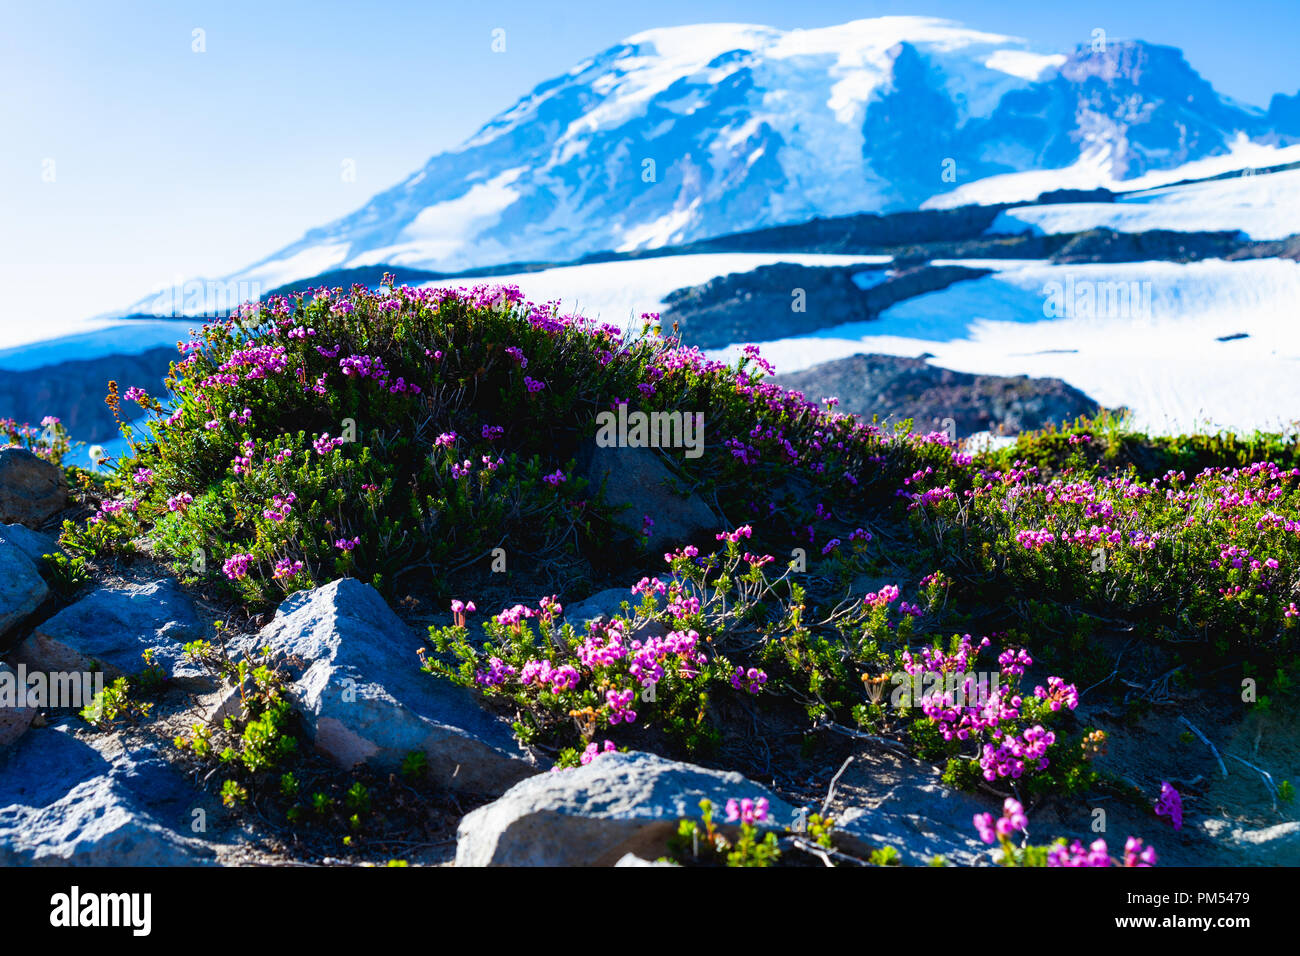 Fleurs sauvages aux couleurs hors des sentiers de randonnée de glacier avec vue sur les sommets de montagnes et de pics dans la distance. Banque D'Images